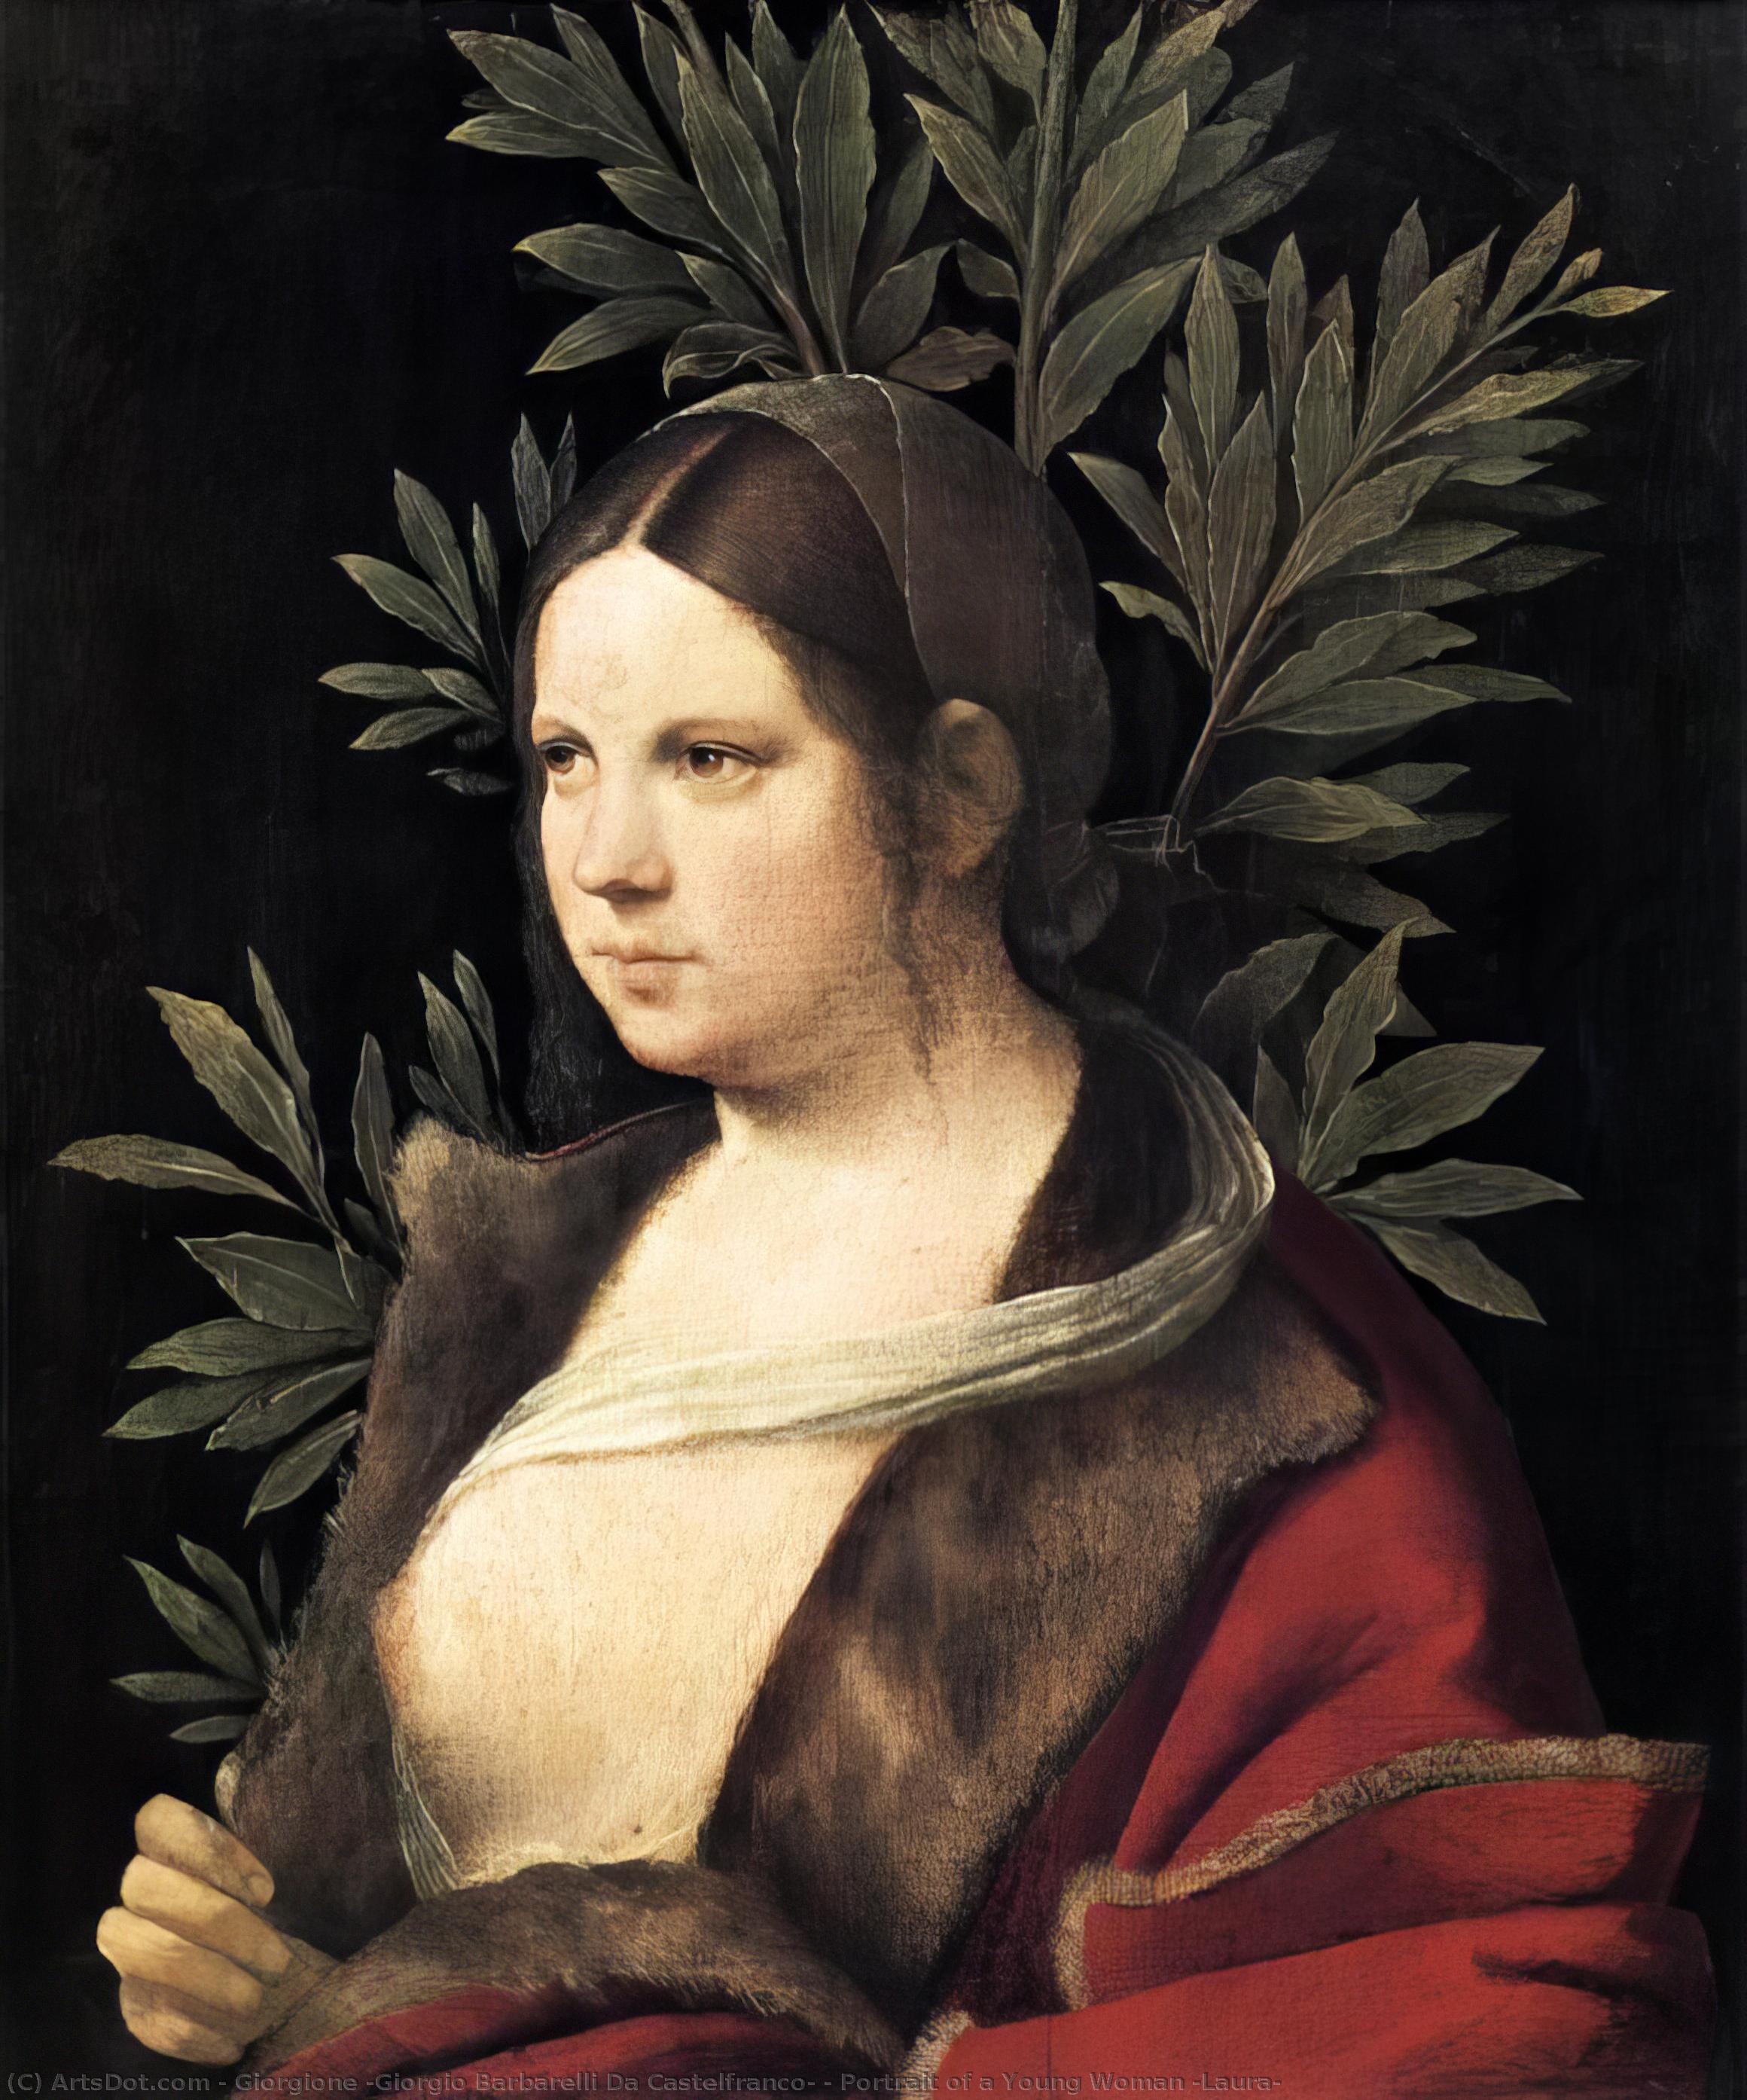 WikiOO.org - Enciclopédia das Belas Artes - Pintura, Arte por Giorgione (Giorgio Barbarelli Da Castelfranco) - Portrait of a Young Woman (Laura)